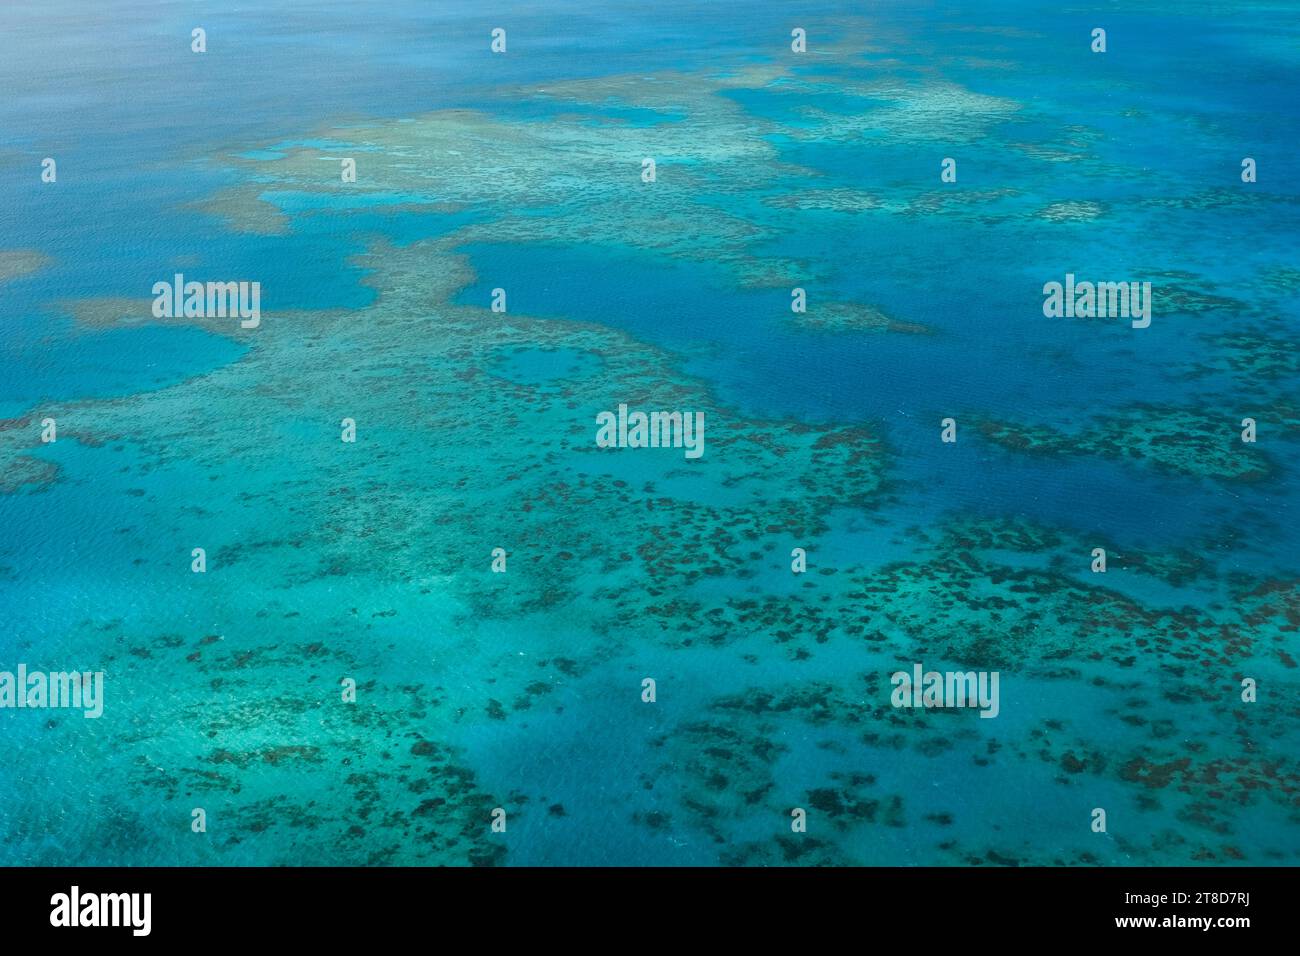 Una vista aerea della barriera corallina, dei bar di sabbia bianca, delle isole tropicali e delle limpide acque turchesi della grande Barriera Corallina: Mar dei Coralli, Cairns Foto Stock